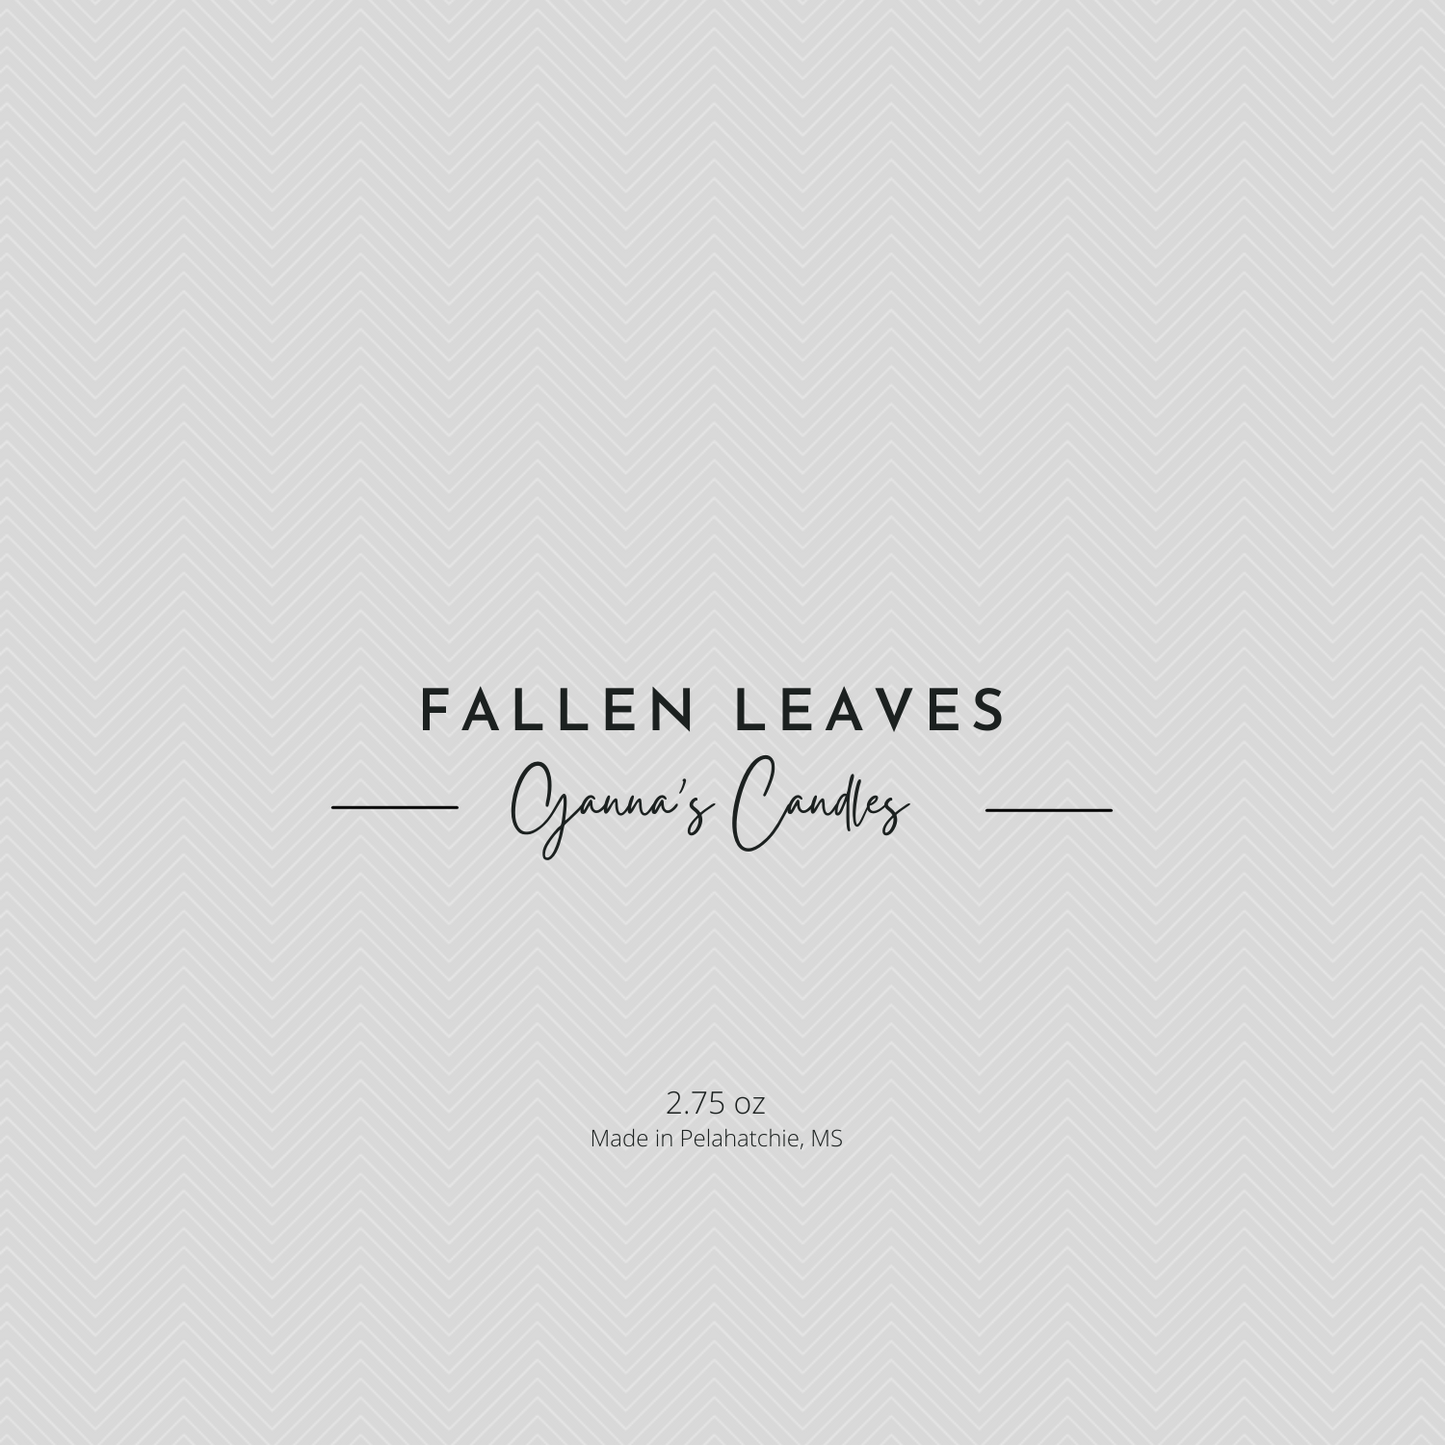 Fallen Leaves Melts